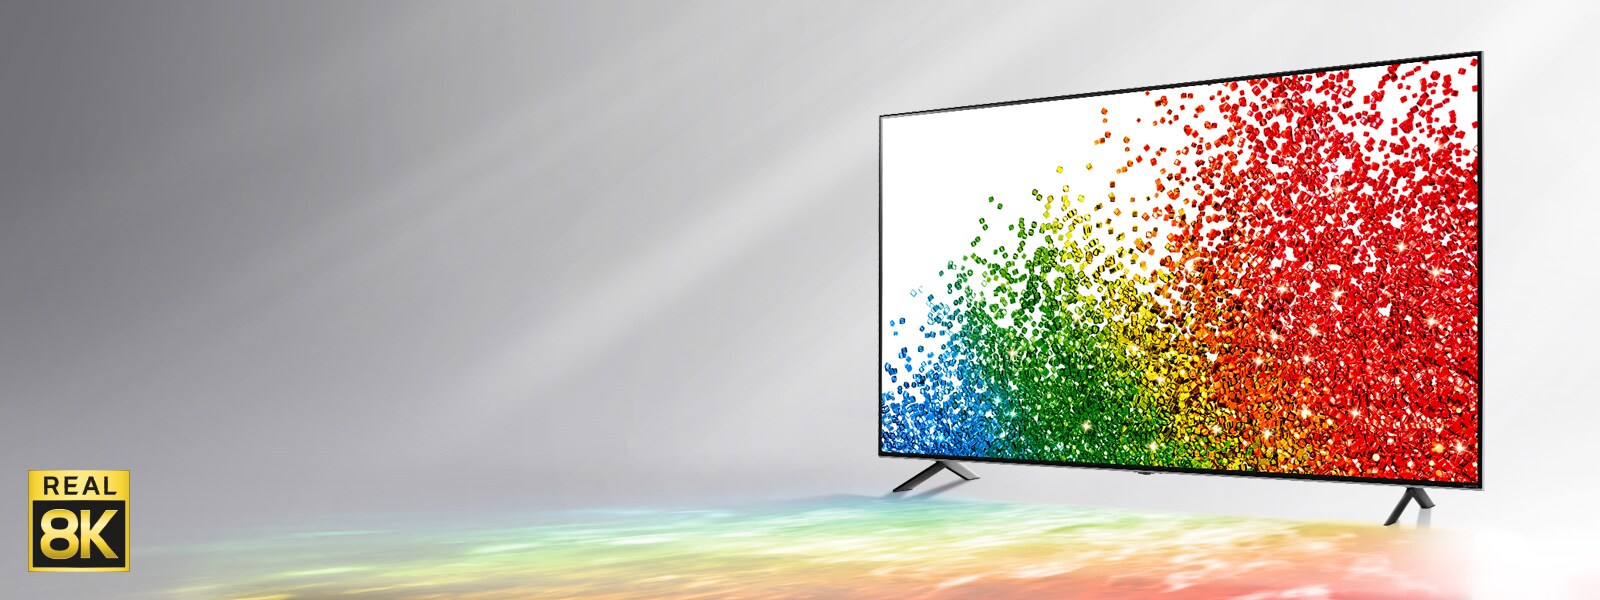 صورة لتلفزيون LG NanoCell على خلفية رمادية مع ألوان من الشاشة تنعكس على الأرض أمامه. 